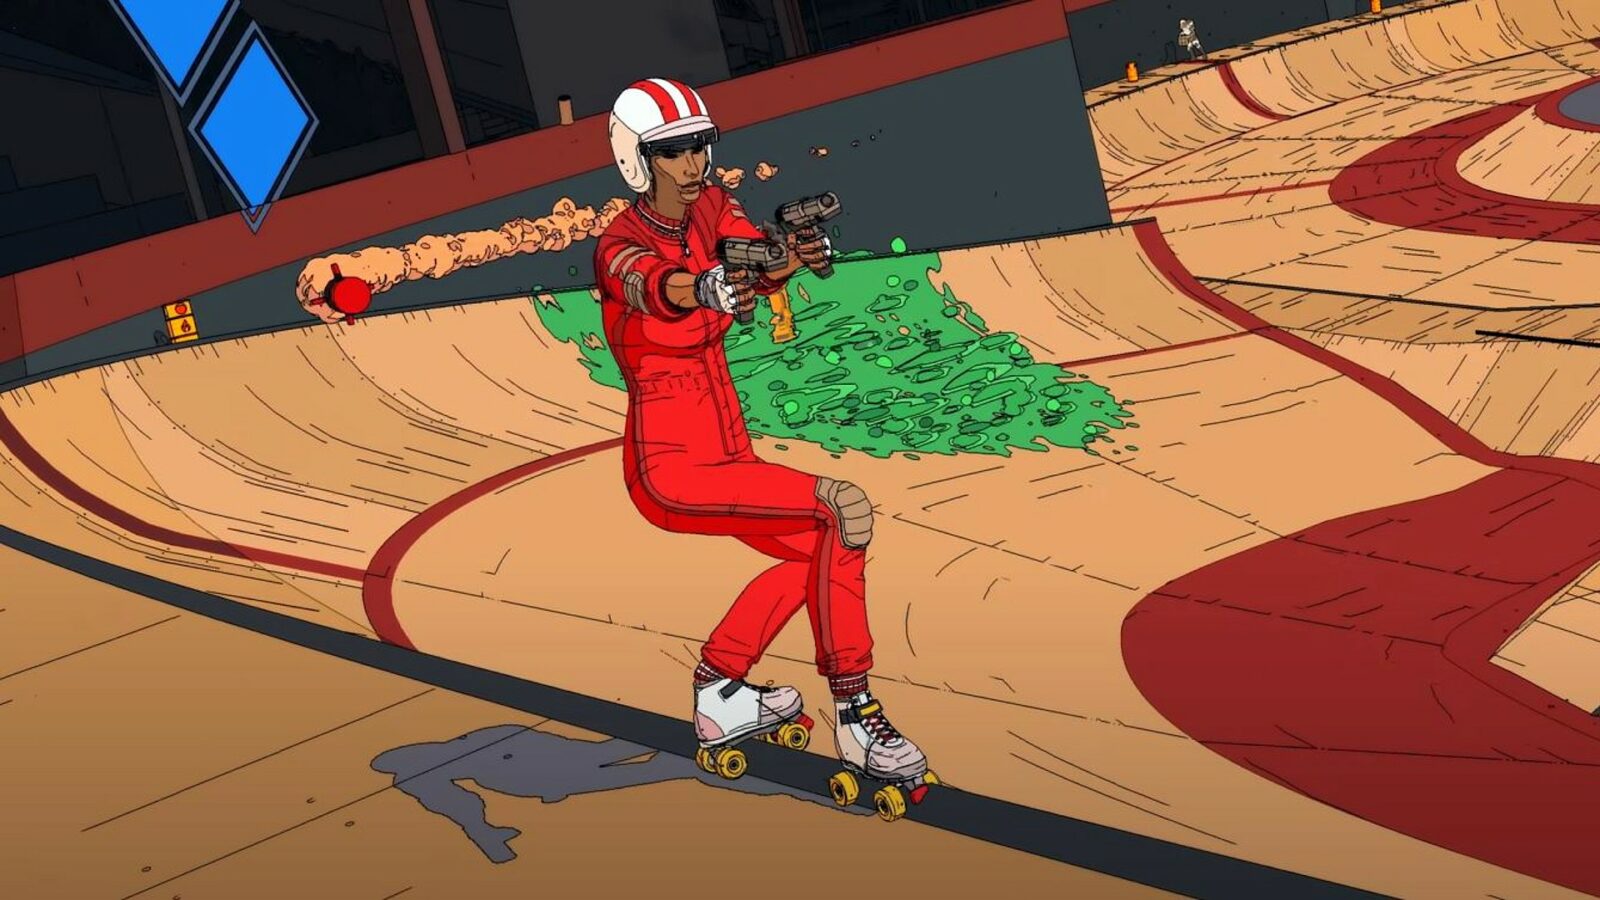 RollerdromeはPSPlusにスケートしますが、無料ゲームとしてではありません